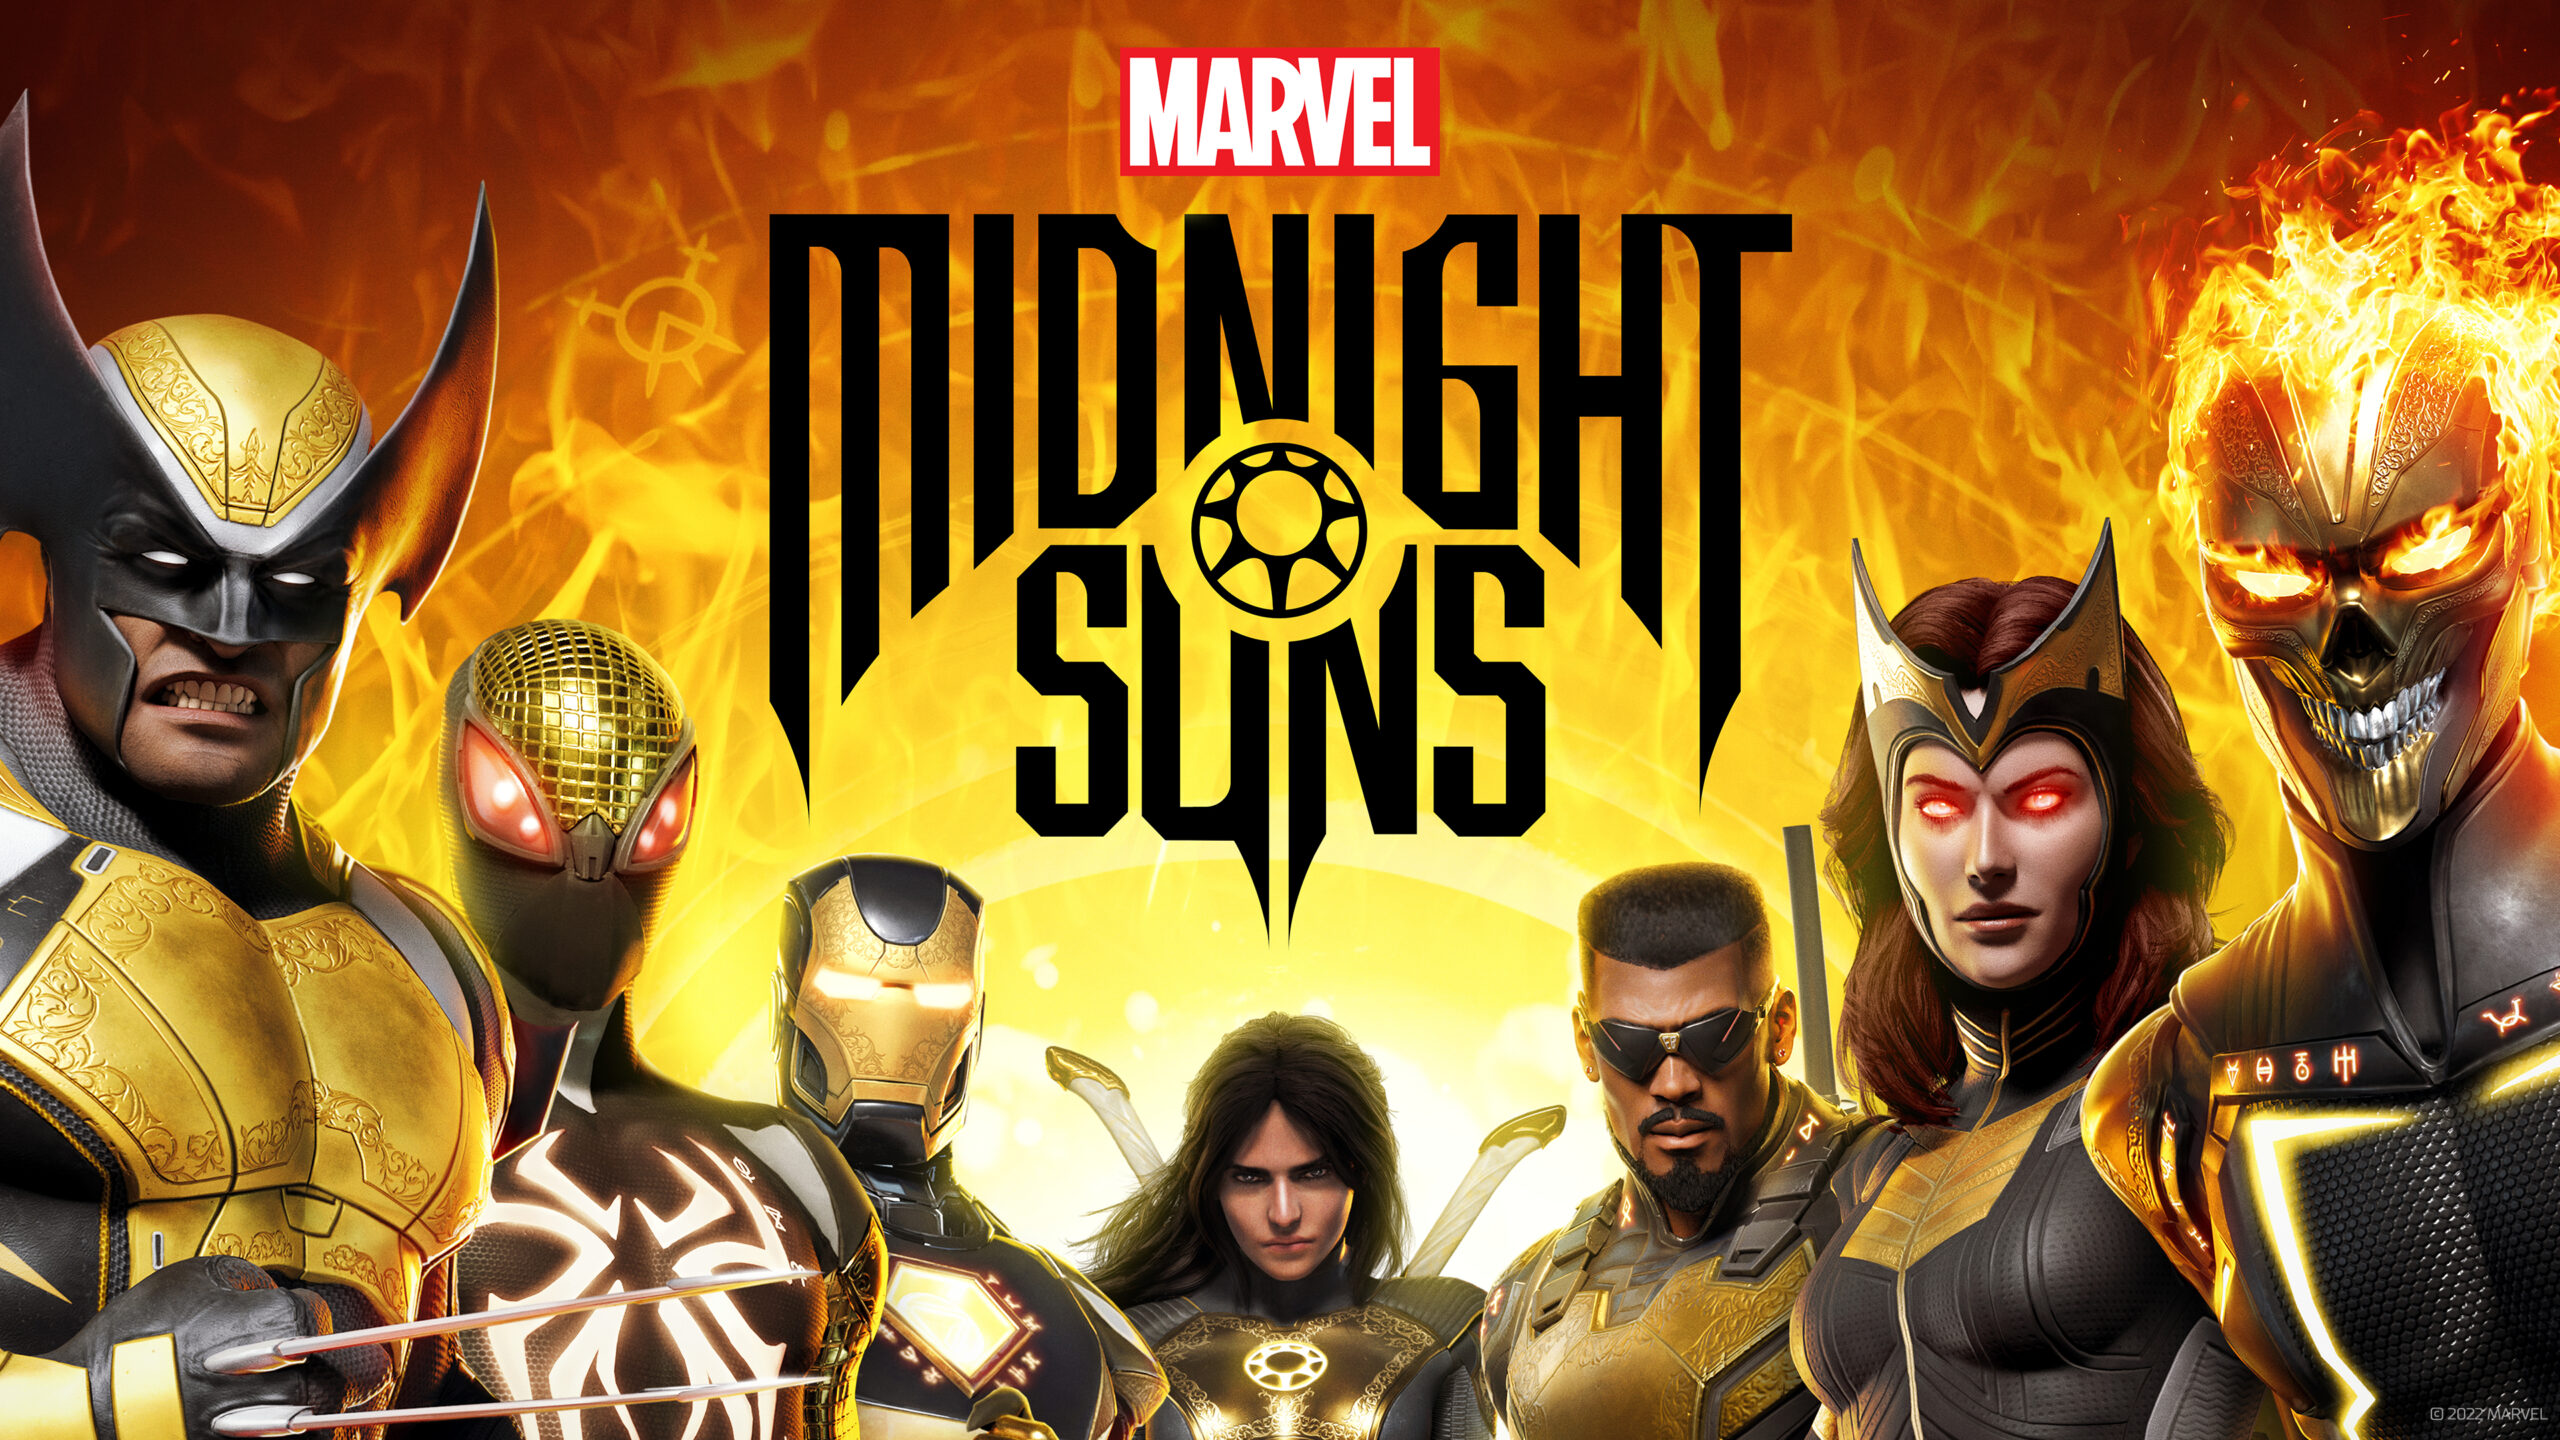 PlayStation Plus para marzo: NBA 2K24, Midnight Suns, DBZ Kakarot y RE3 entre los juegos